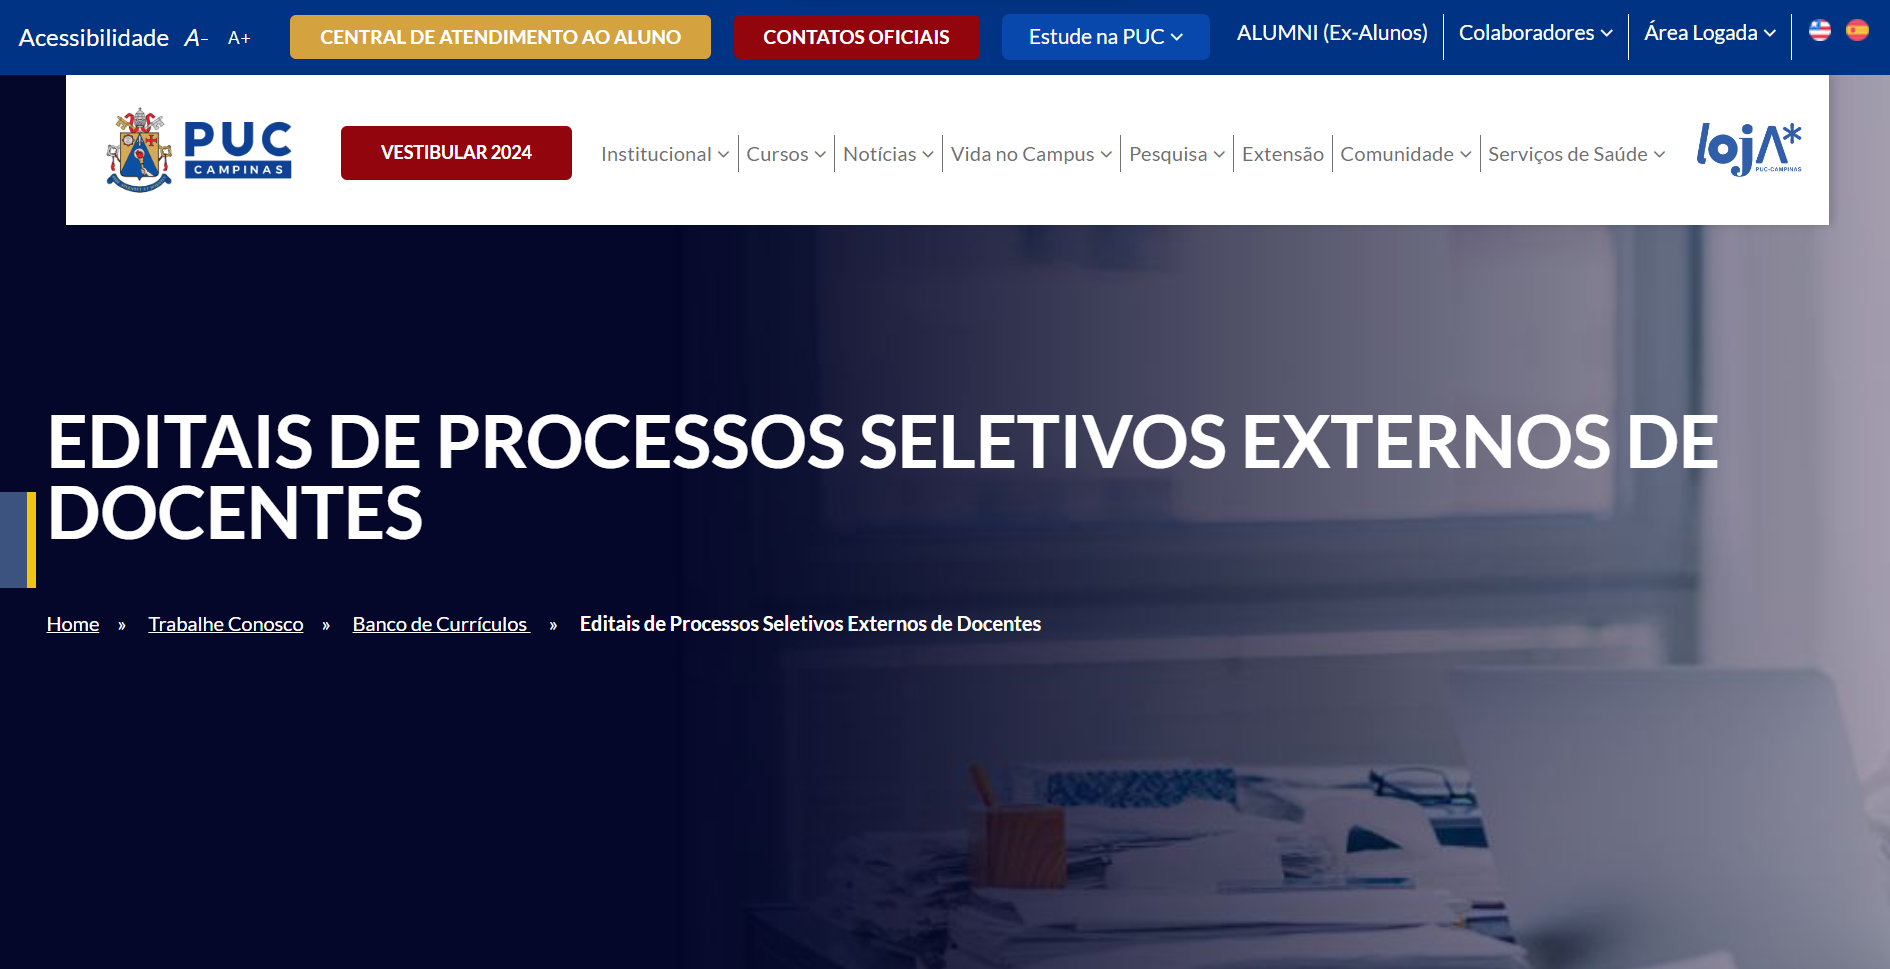 Reprodução da página de abertura do site da PUC Campinas com os dizeres EDITAIS DE PROCESSOS SELETIVOS EXTERNOS DE DOCENTES.